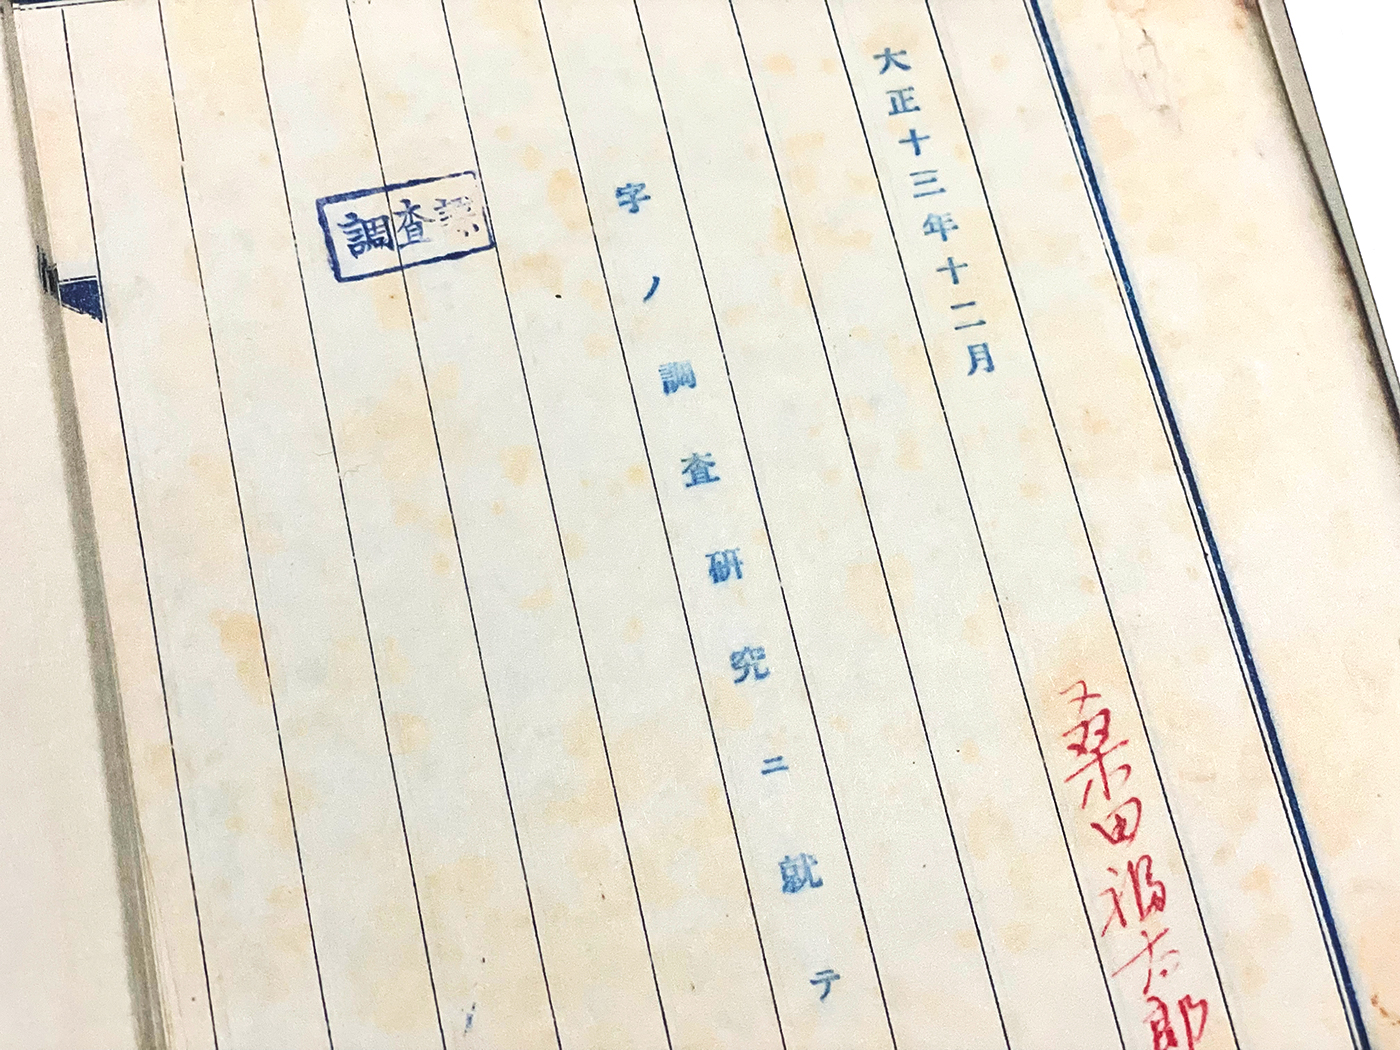 桑田福太郎による書体研究の報告書。2021年7月に三省堂の資料室から発見された、昭和40年の勝畑四郎による手書き資料に含まれていた